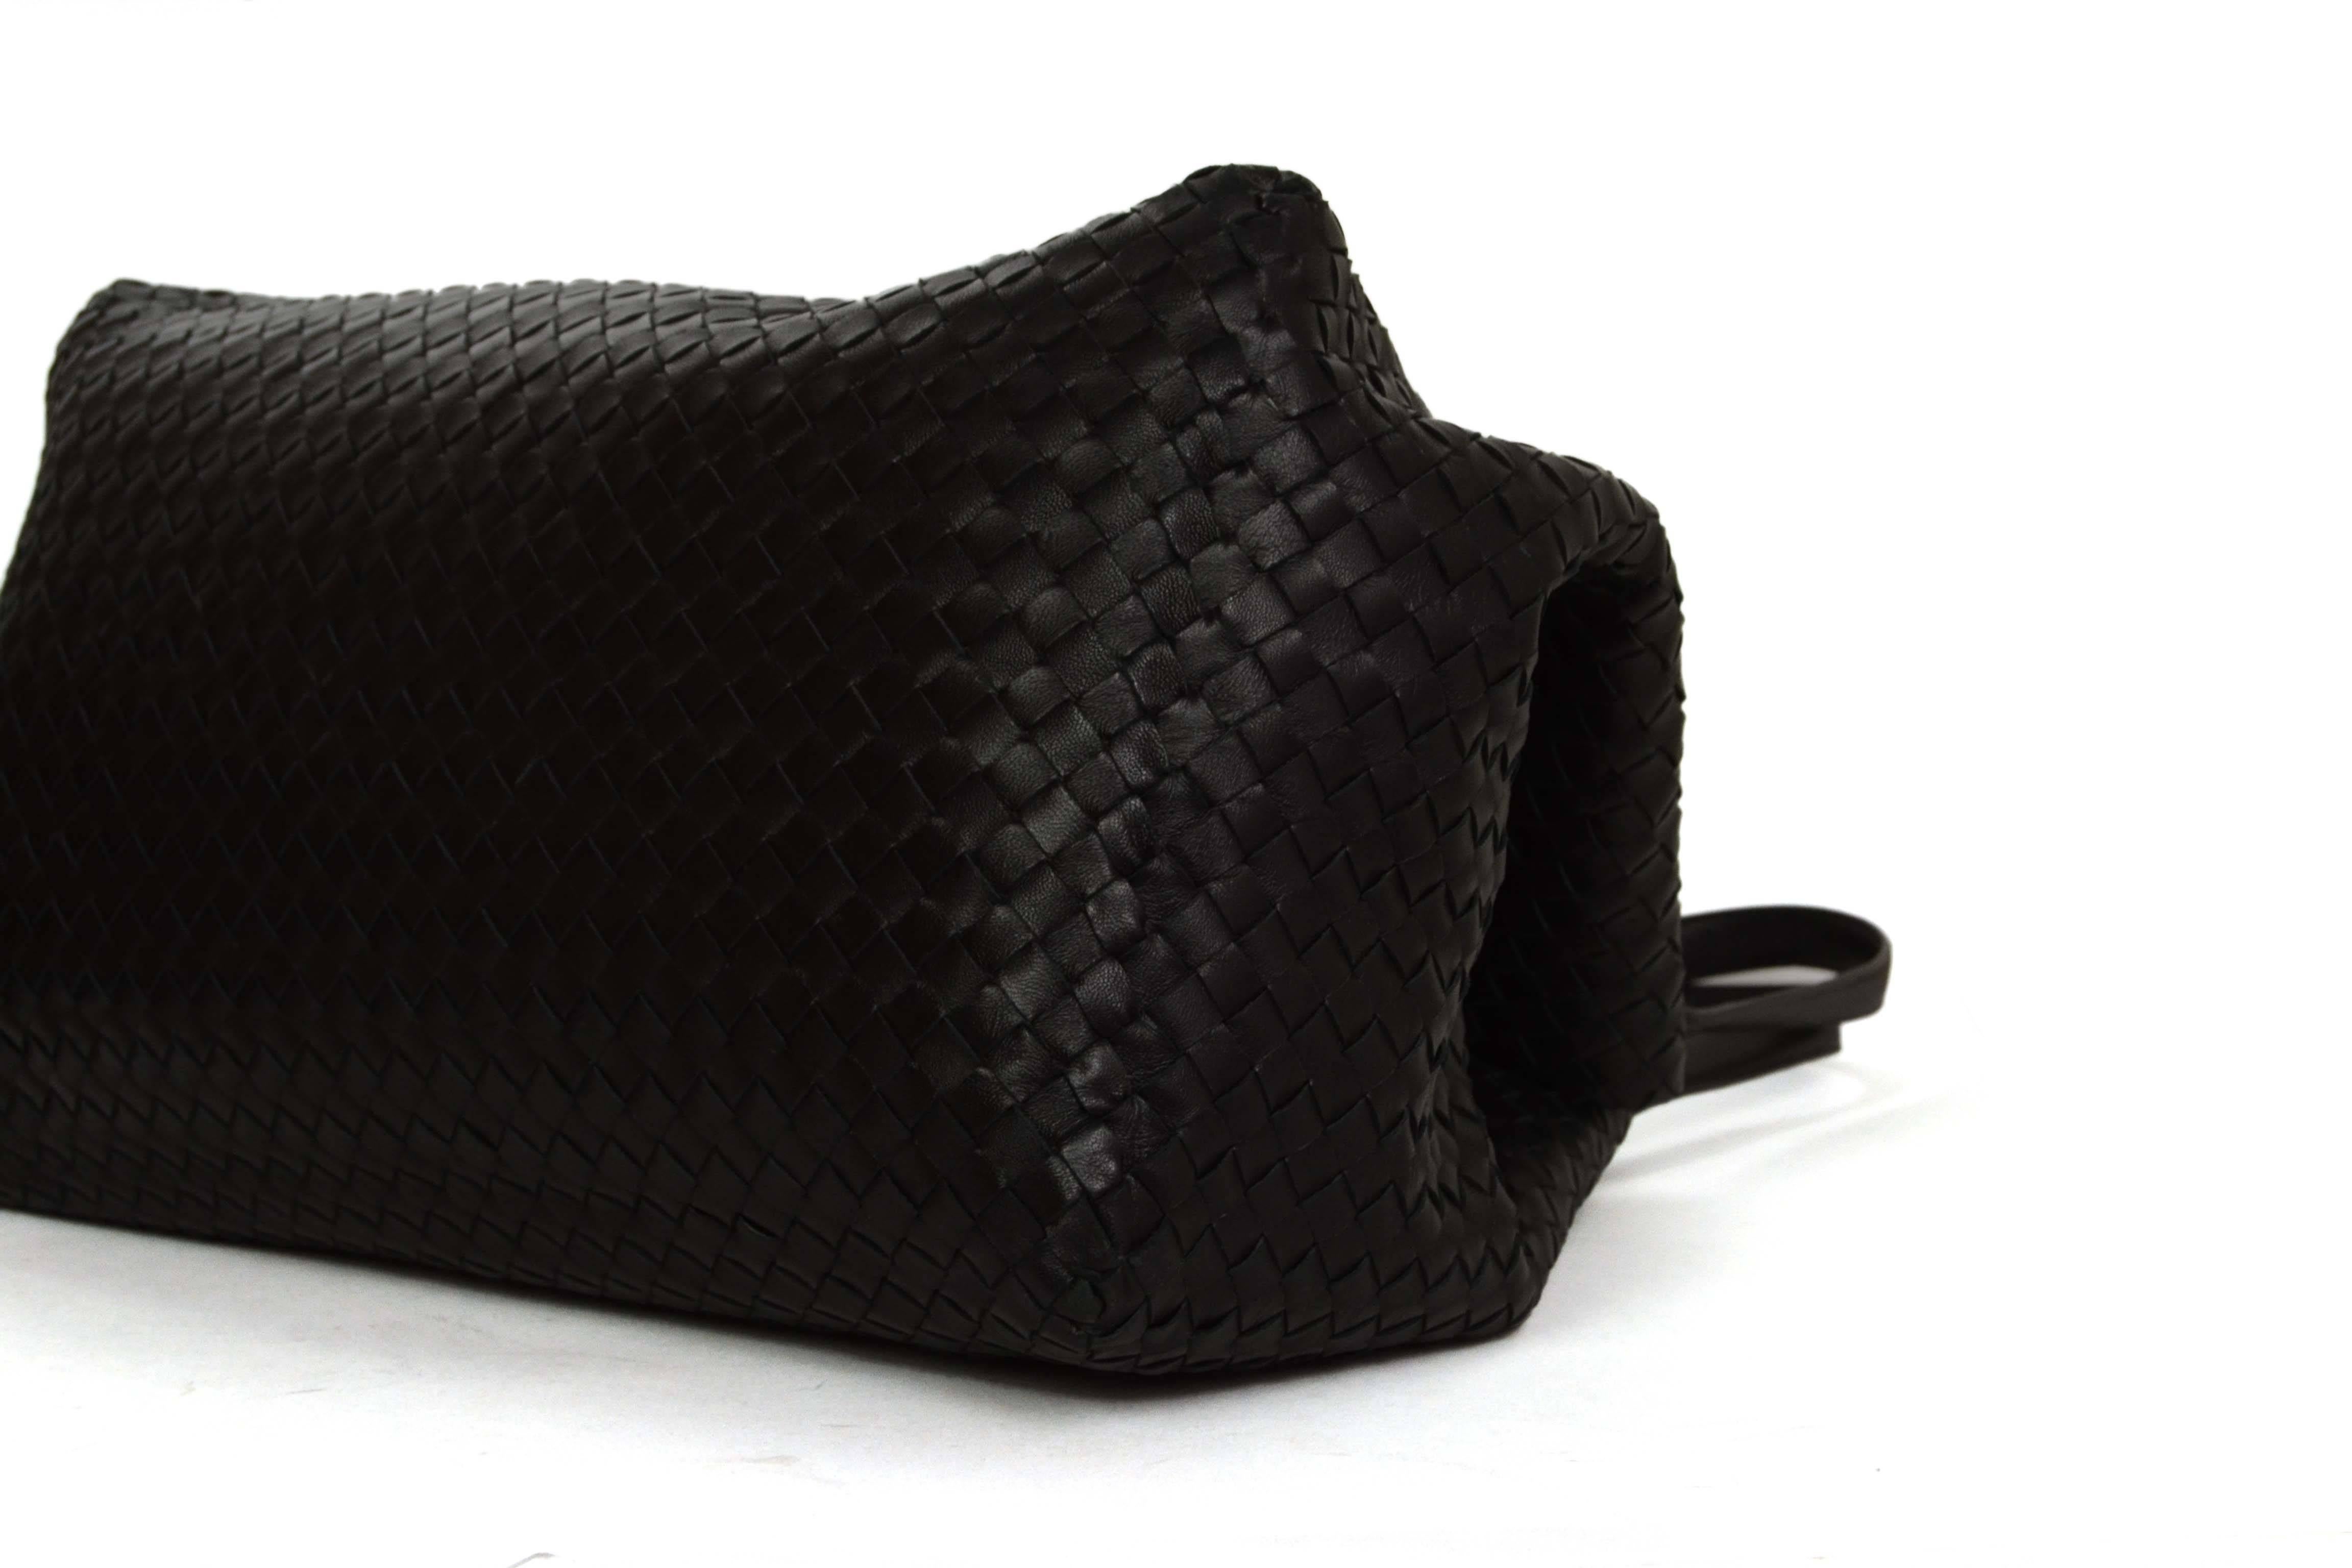 Bottega Veneta Black Woven Leather Large Intrecciato Bag rt. $3, 950 1